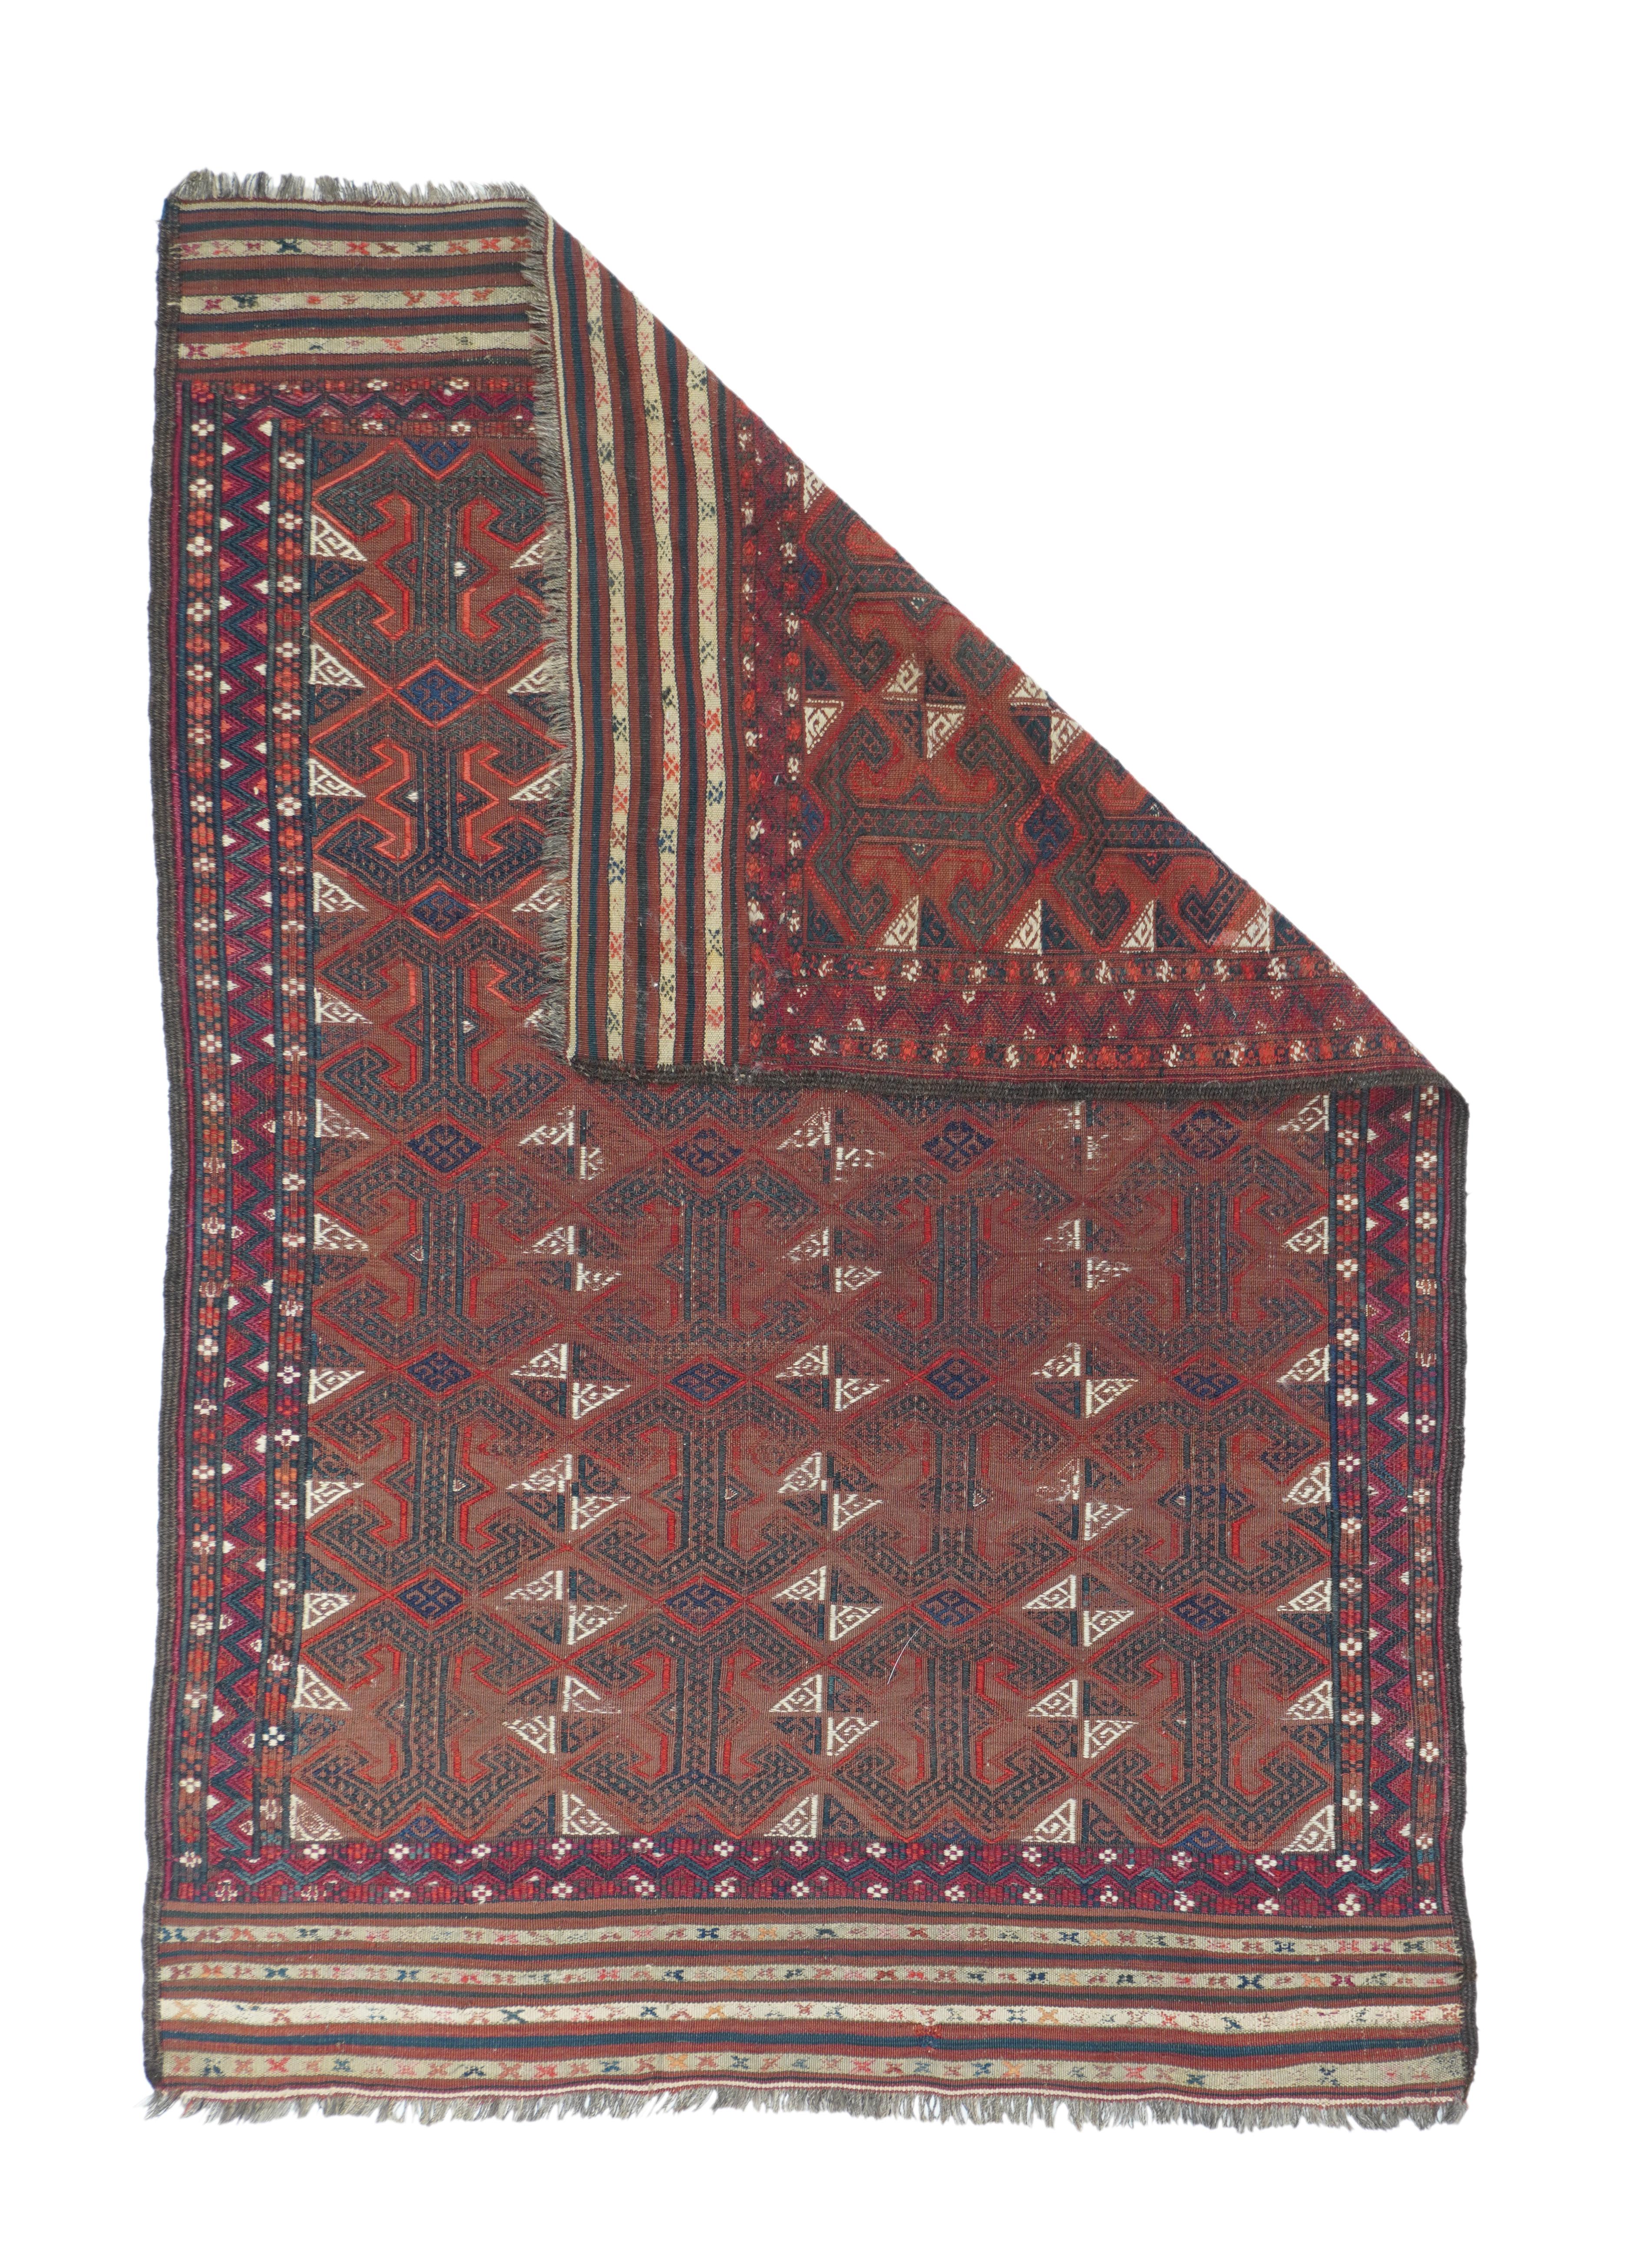 Vintage Kilim rug measures 3'4'' x 4'11''.